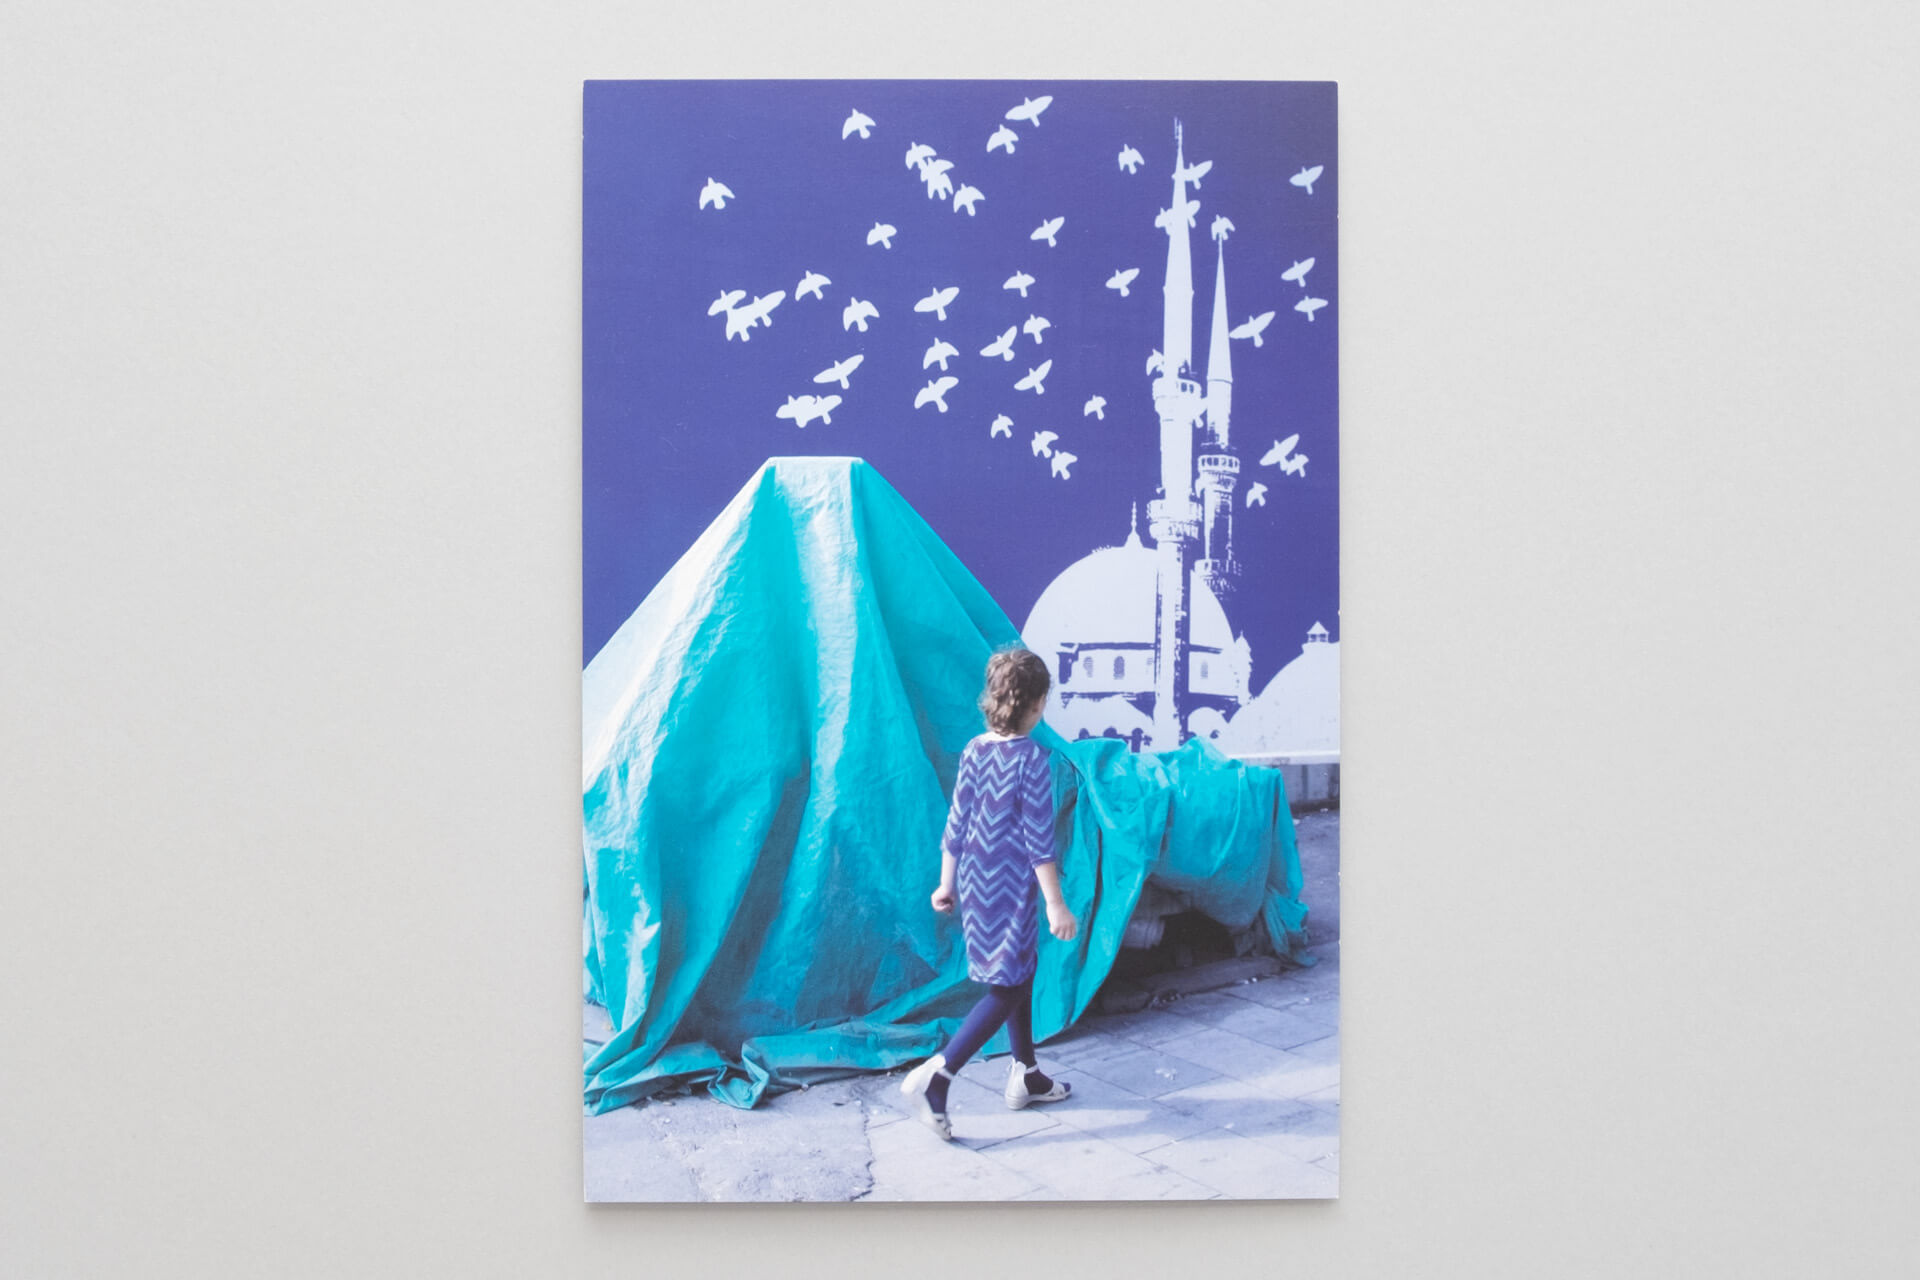 Ausstellungskarte mit Foto aus Istanbul für Floating Volumes: Mädchen läuft vor verhülltem Objekt und schematischem Motiv mit Moschee und Tauben.